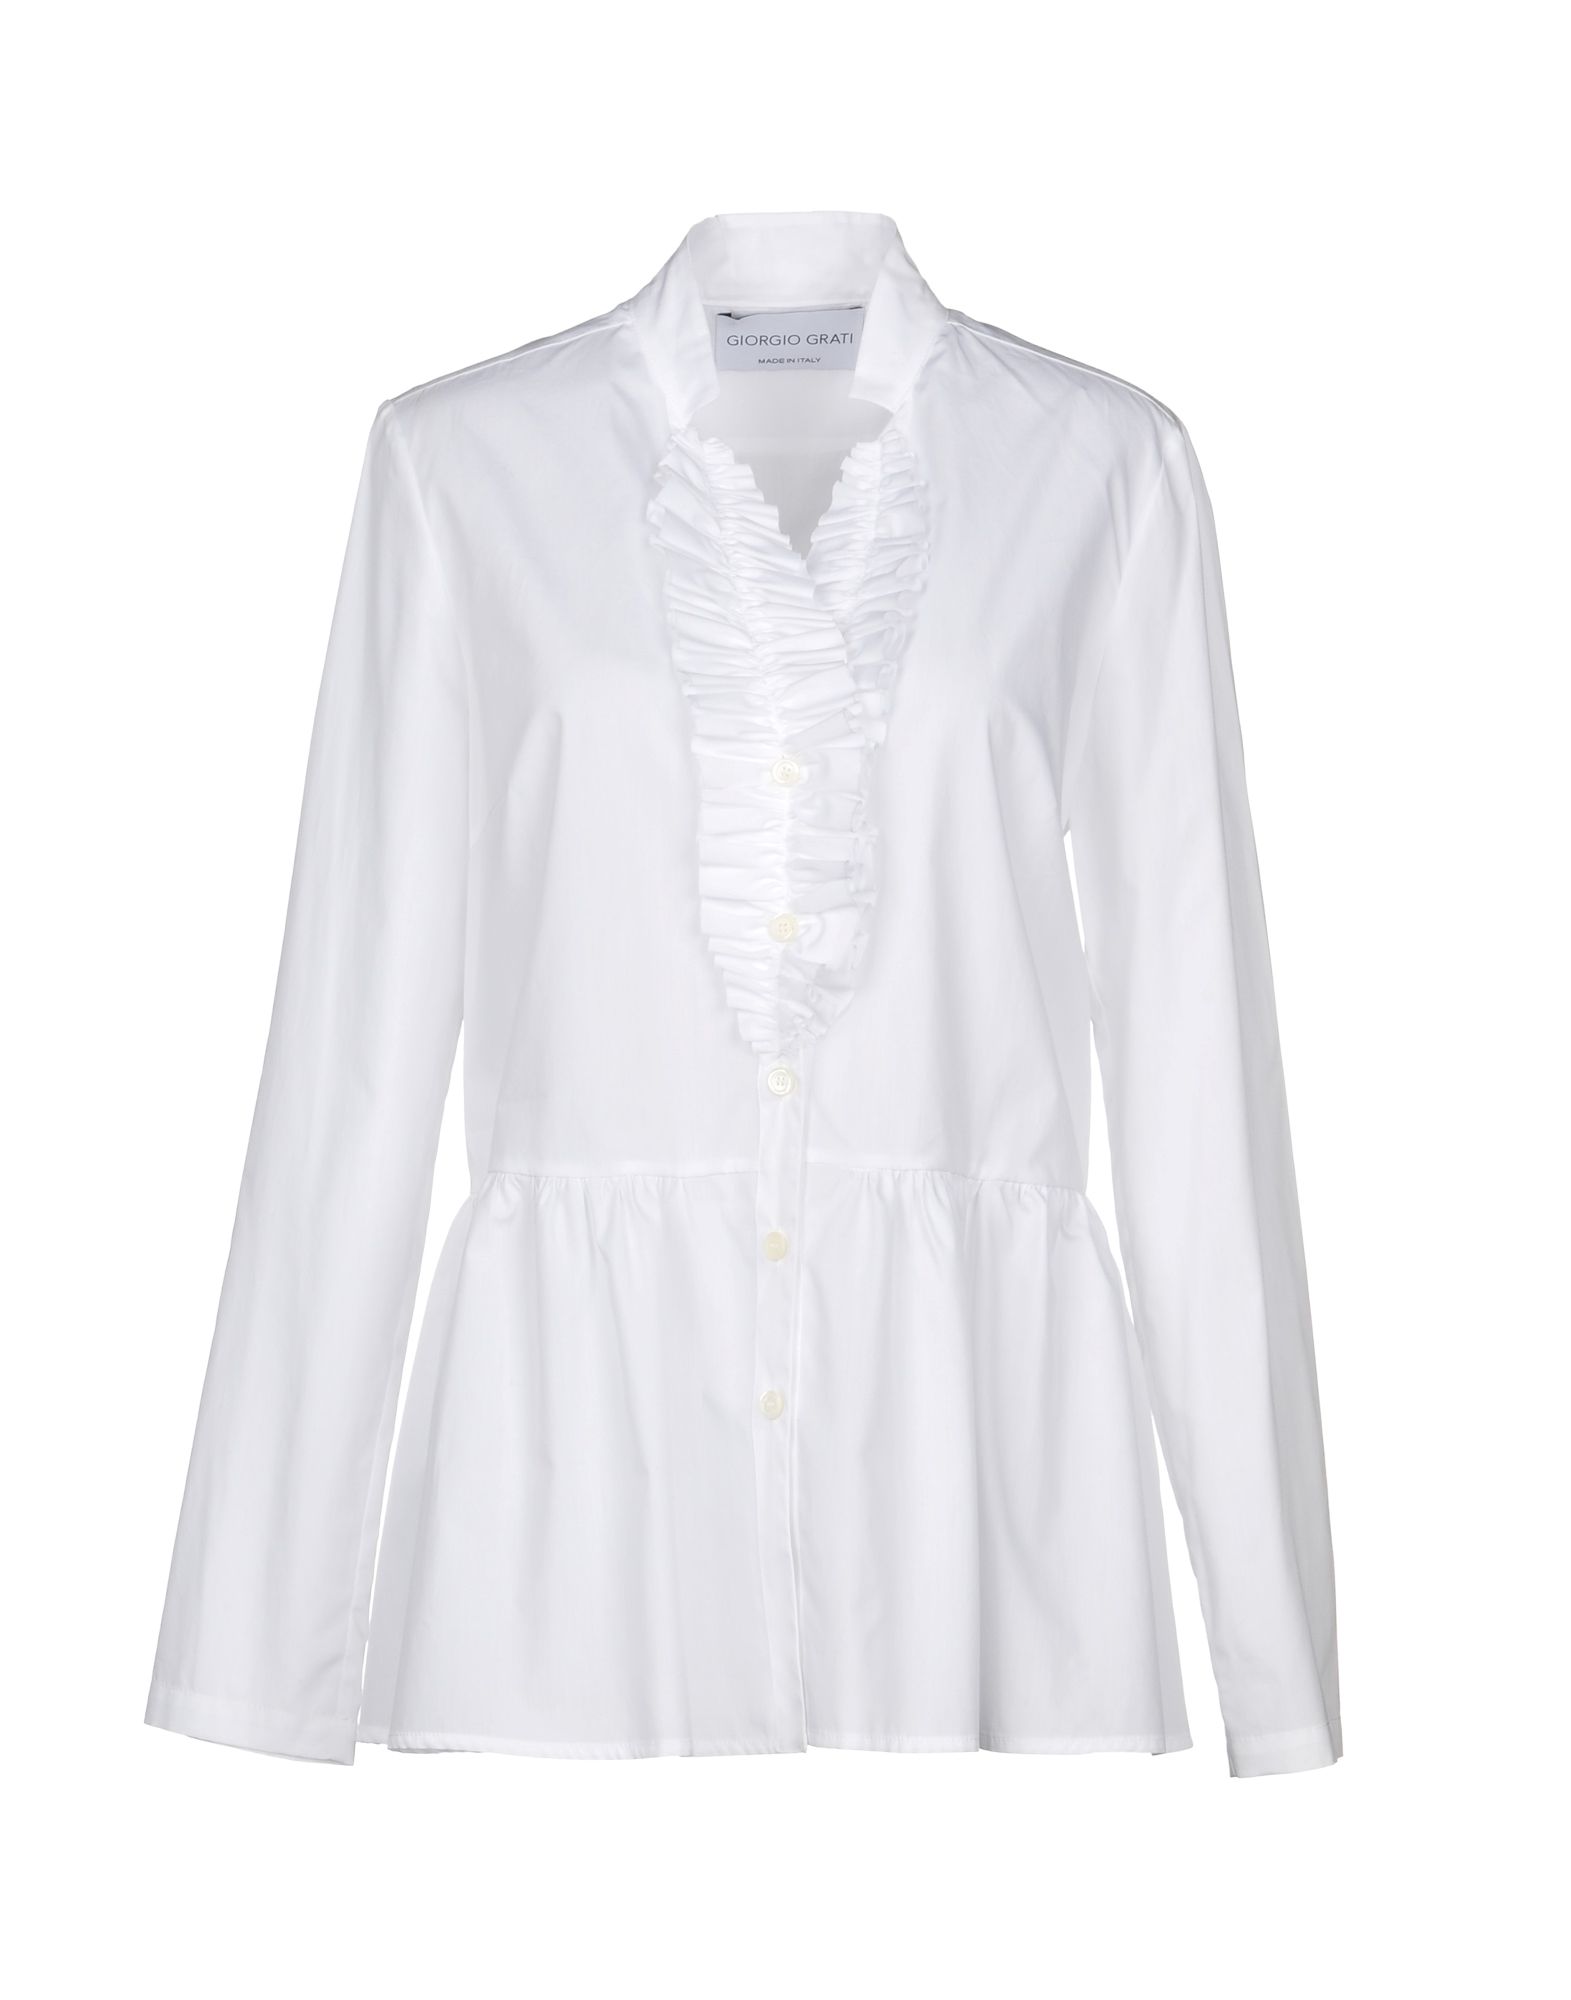 Giorgio Grati Solid Color Shirts & Blouses In White